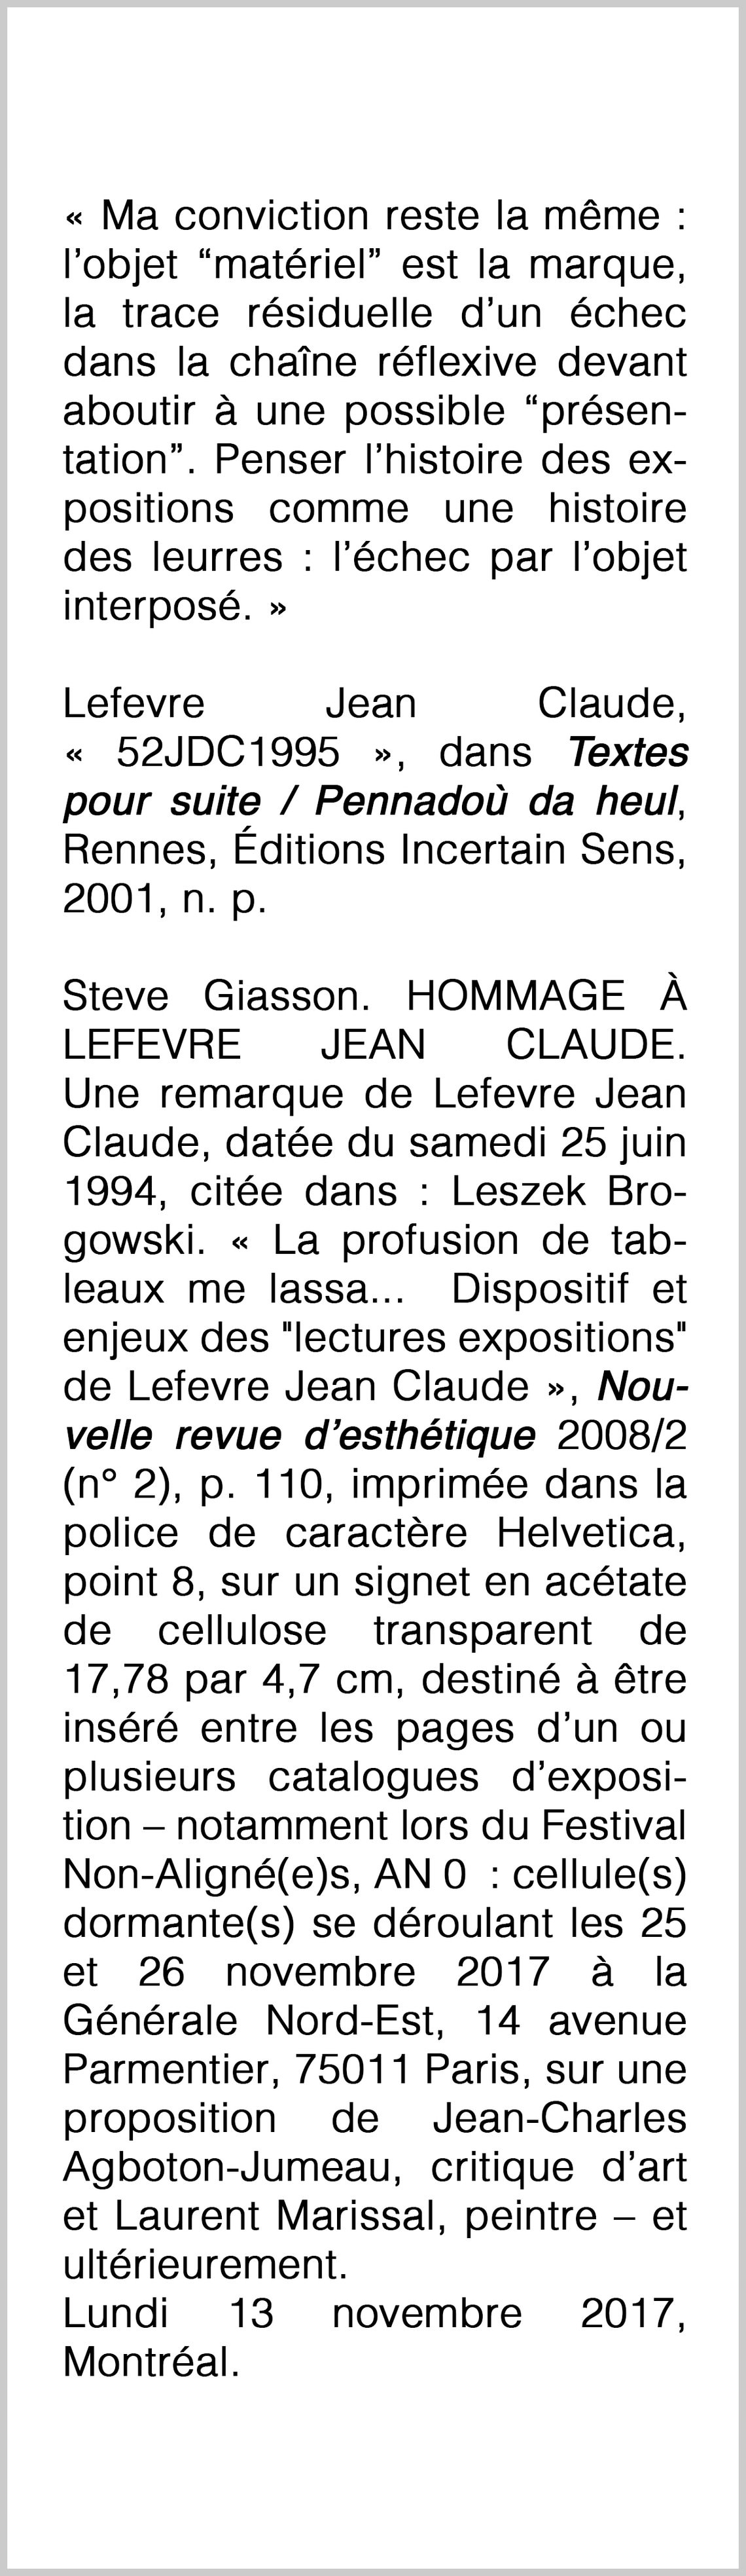  - HOMMAGE À LEFEVRE JEAN CLAUDE (TRIBUTE TO LEFEVRE JEAN CLAUDE)